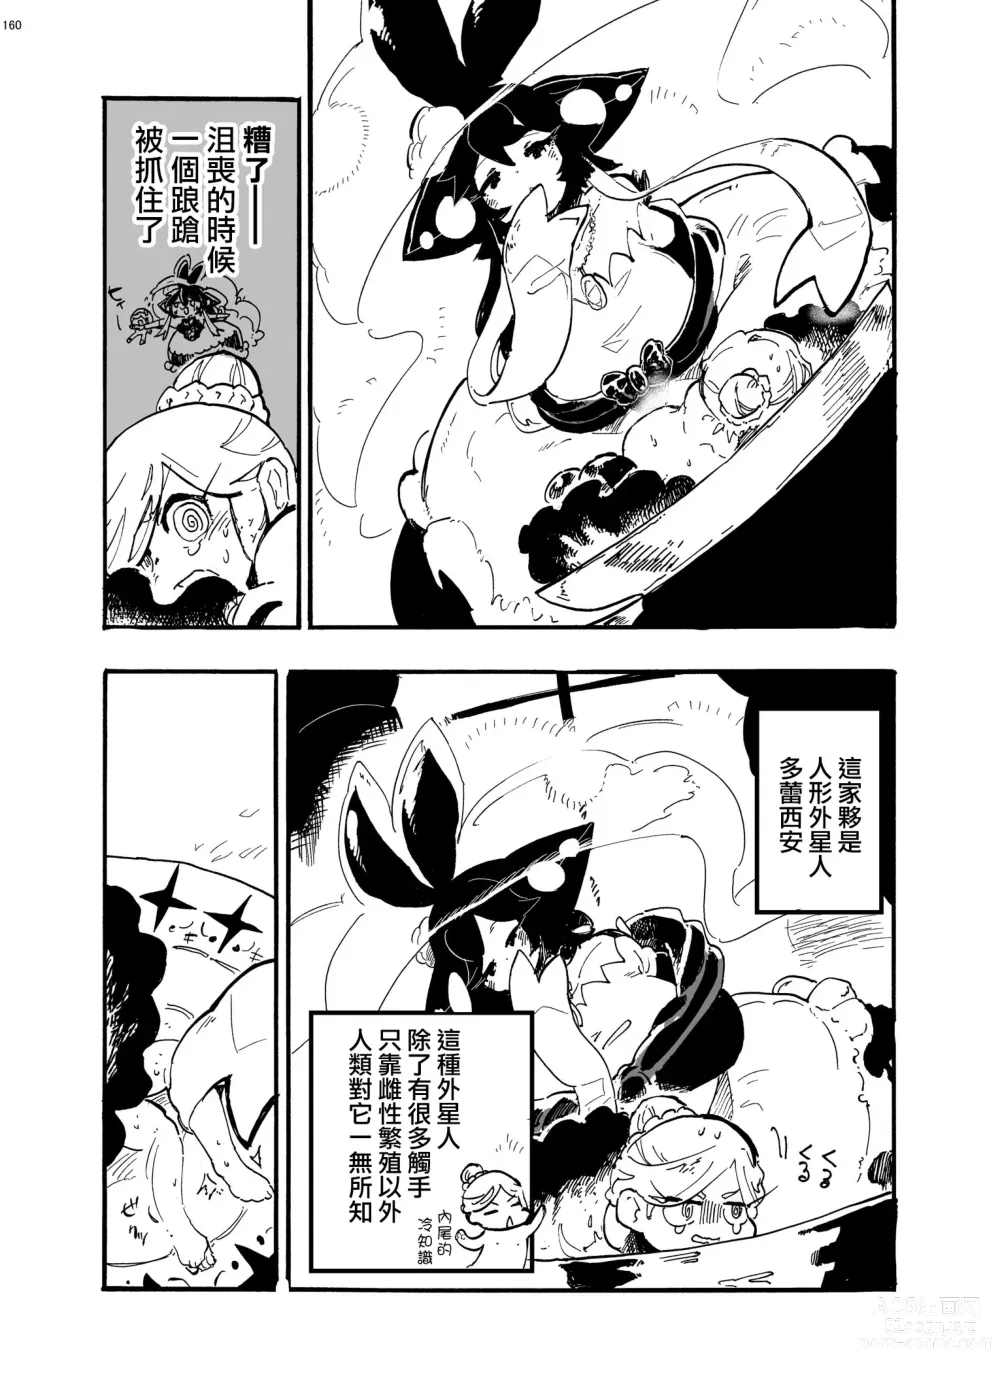 Page 3 of manga 外星人D和研究員U的遭遇